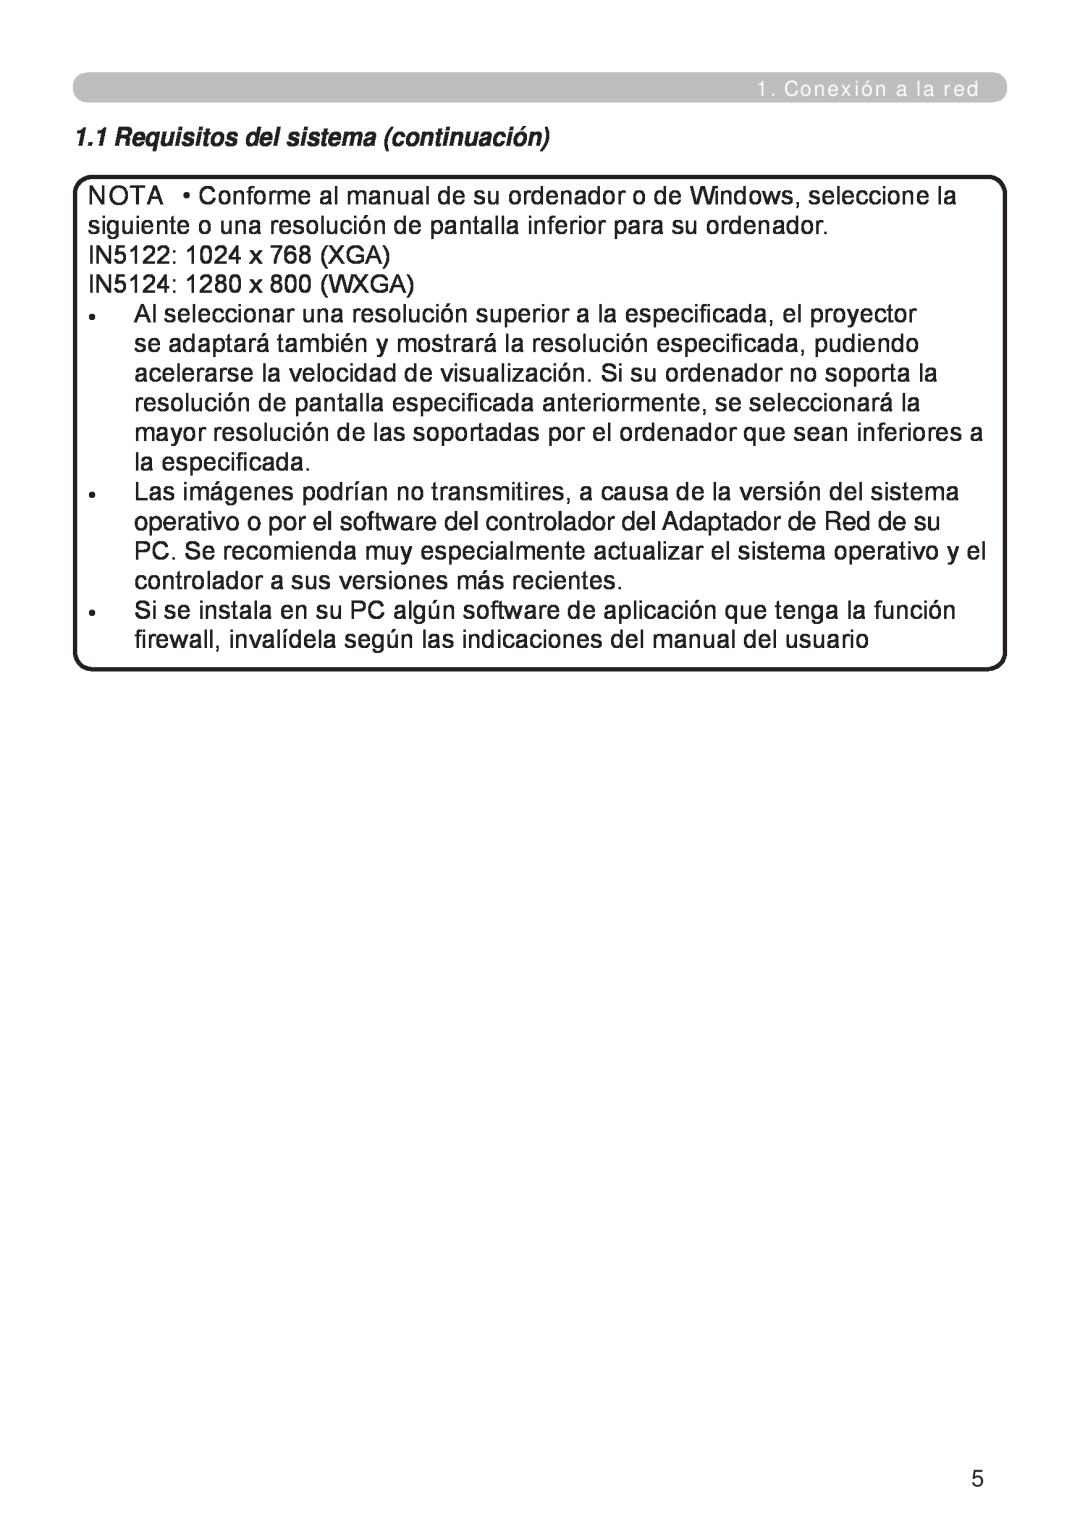 InFocus W60, W61 manual Requisitos del sistema continuación 